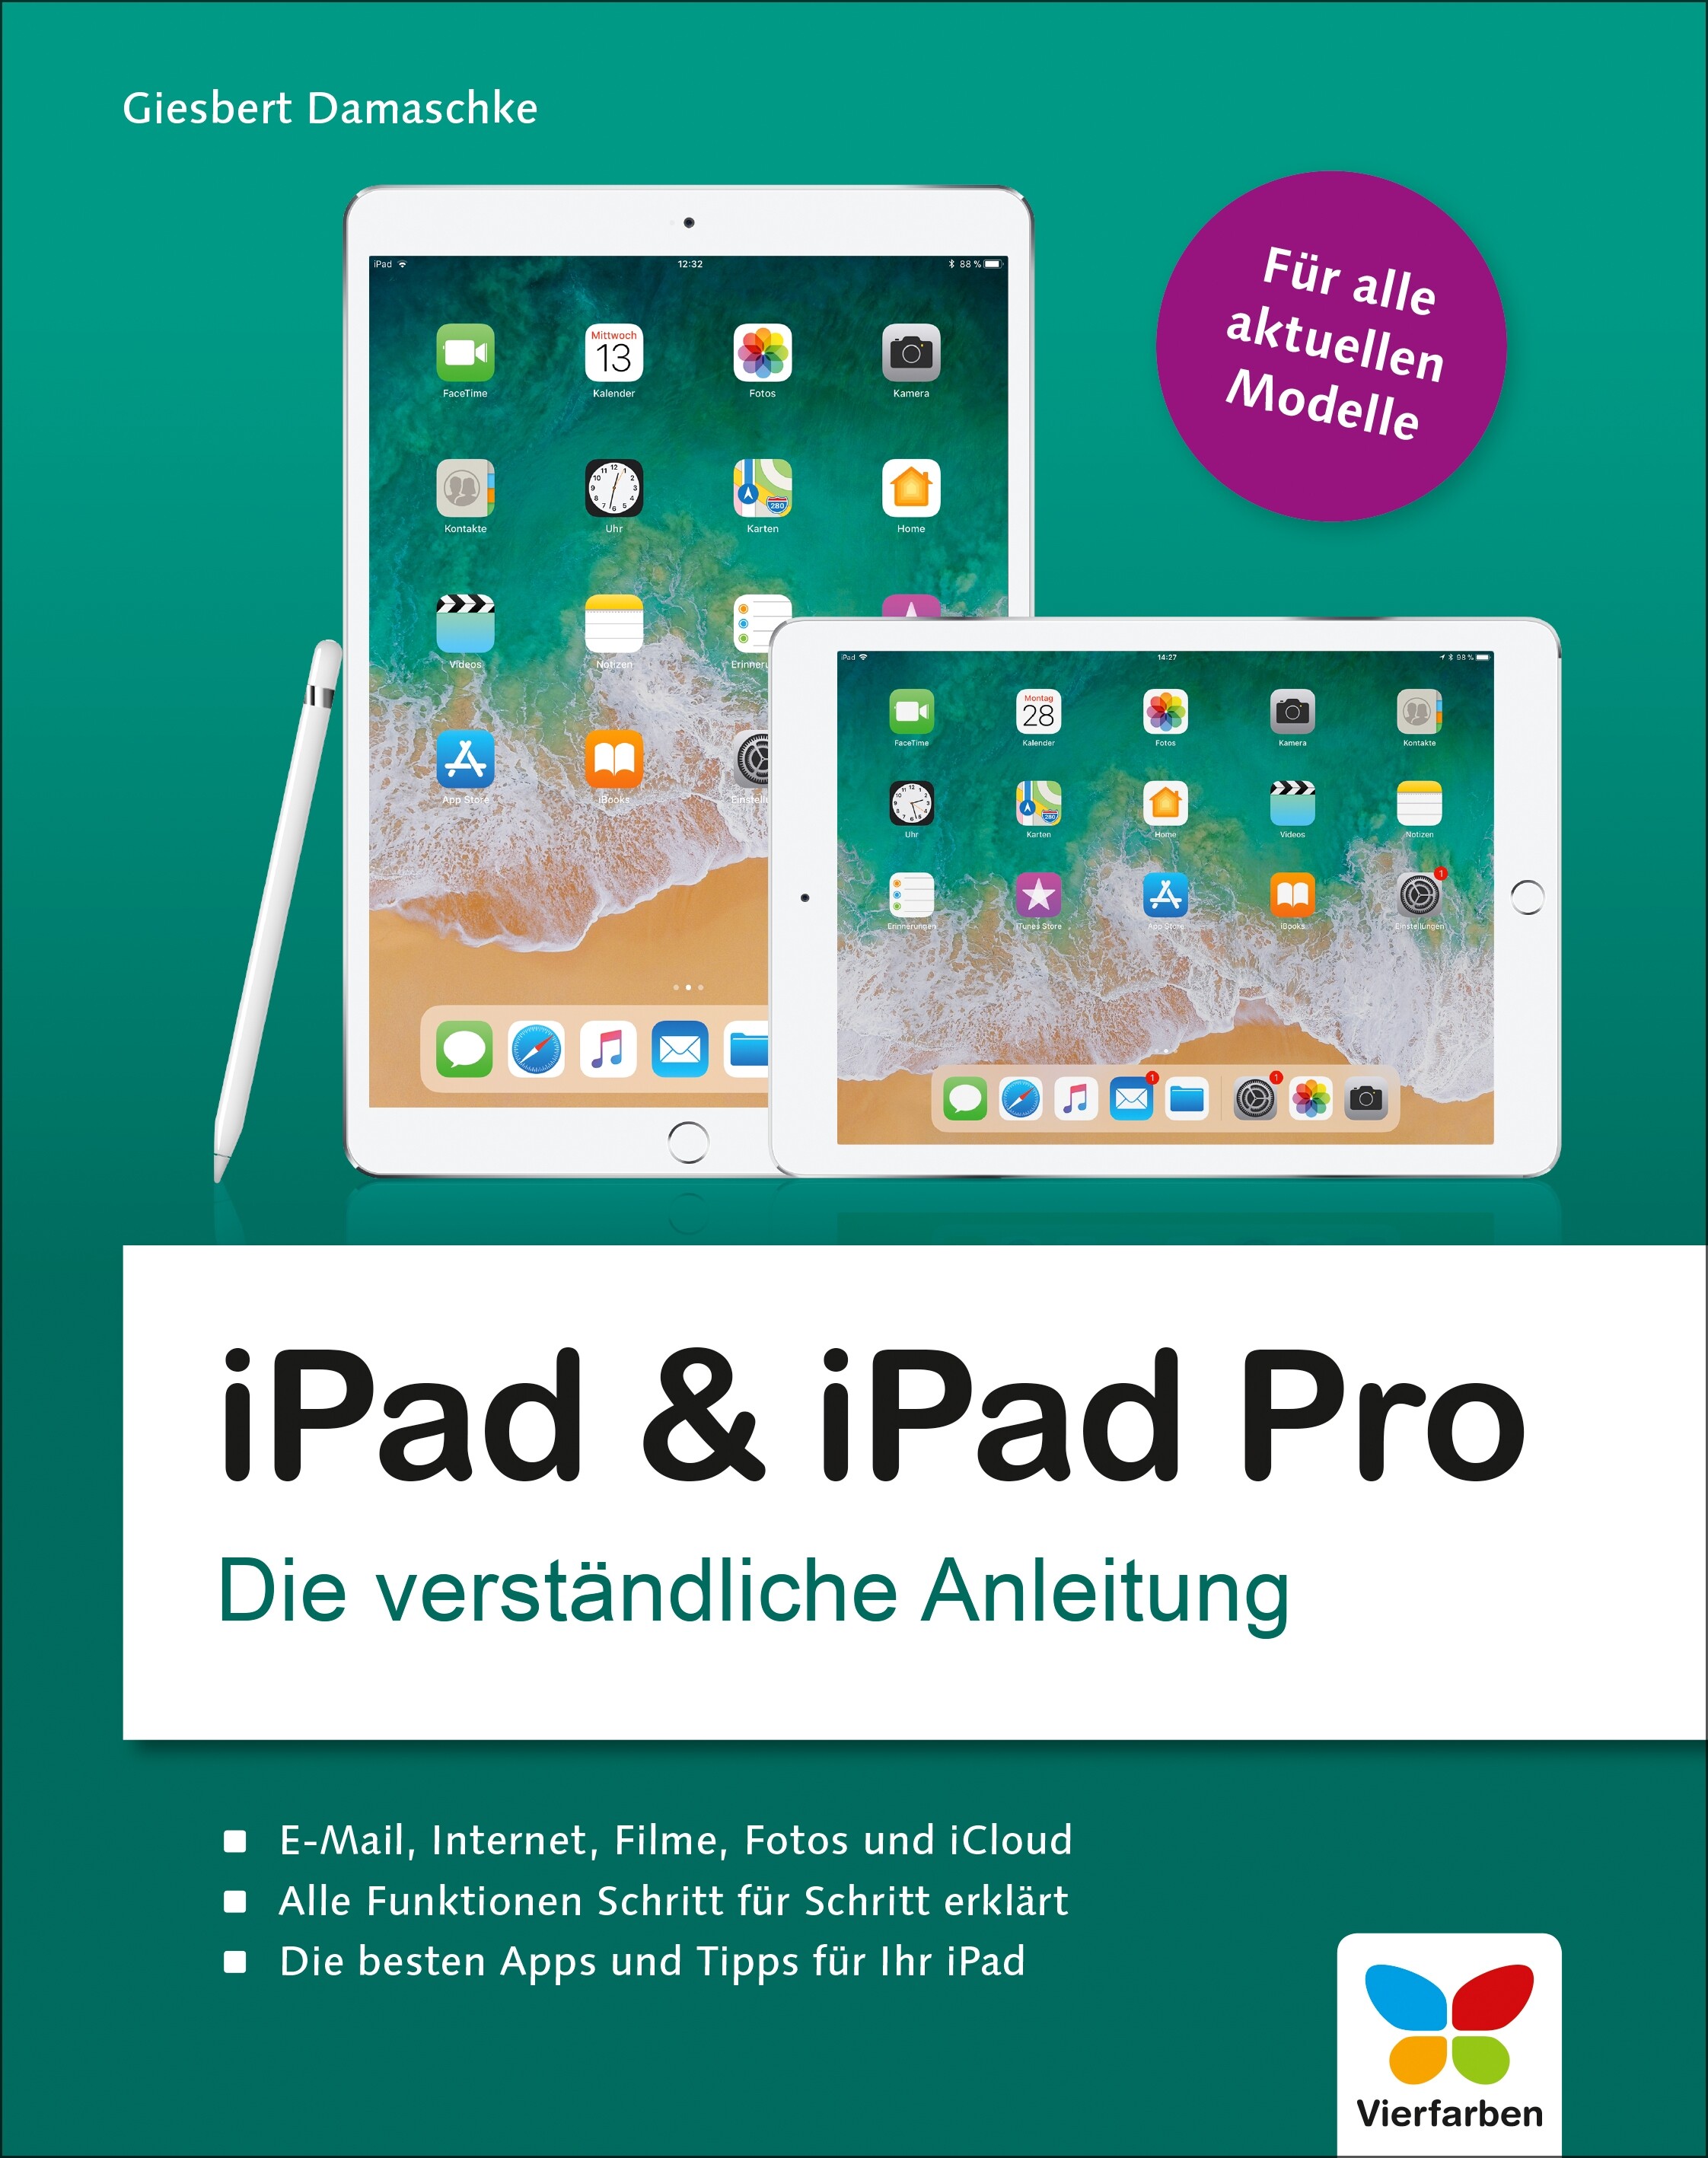 iPad & iPad Pro